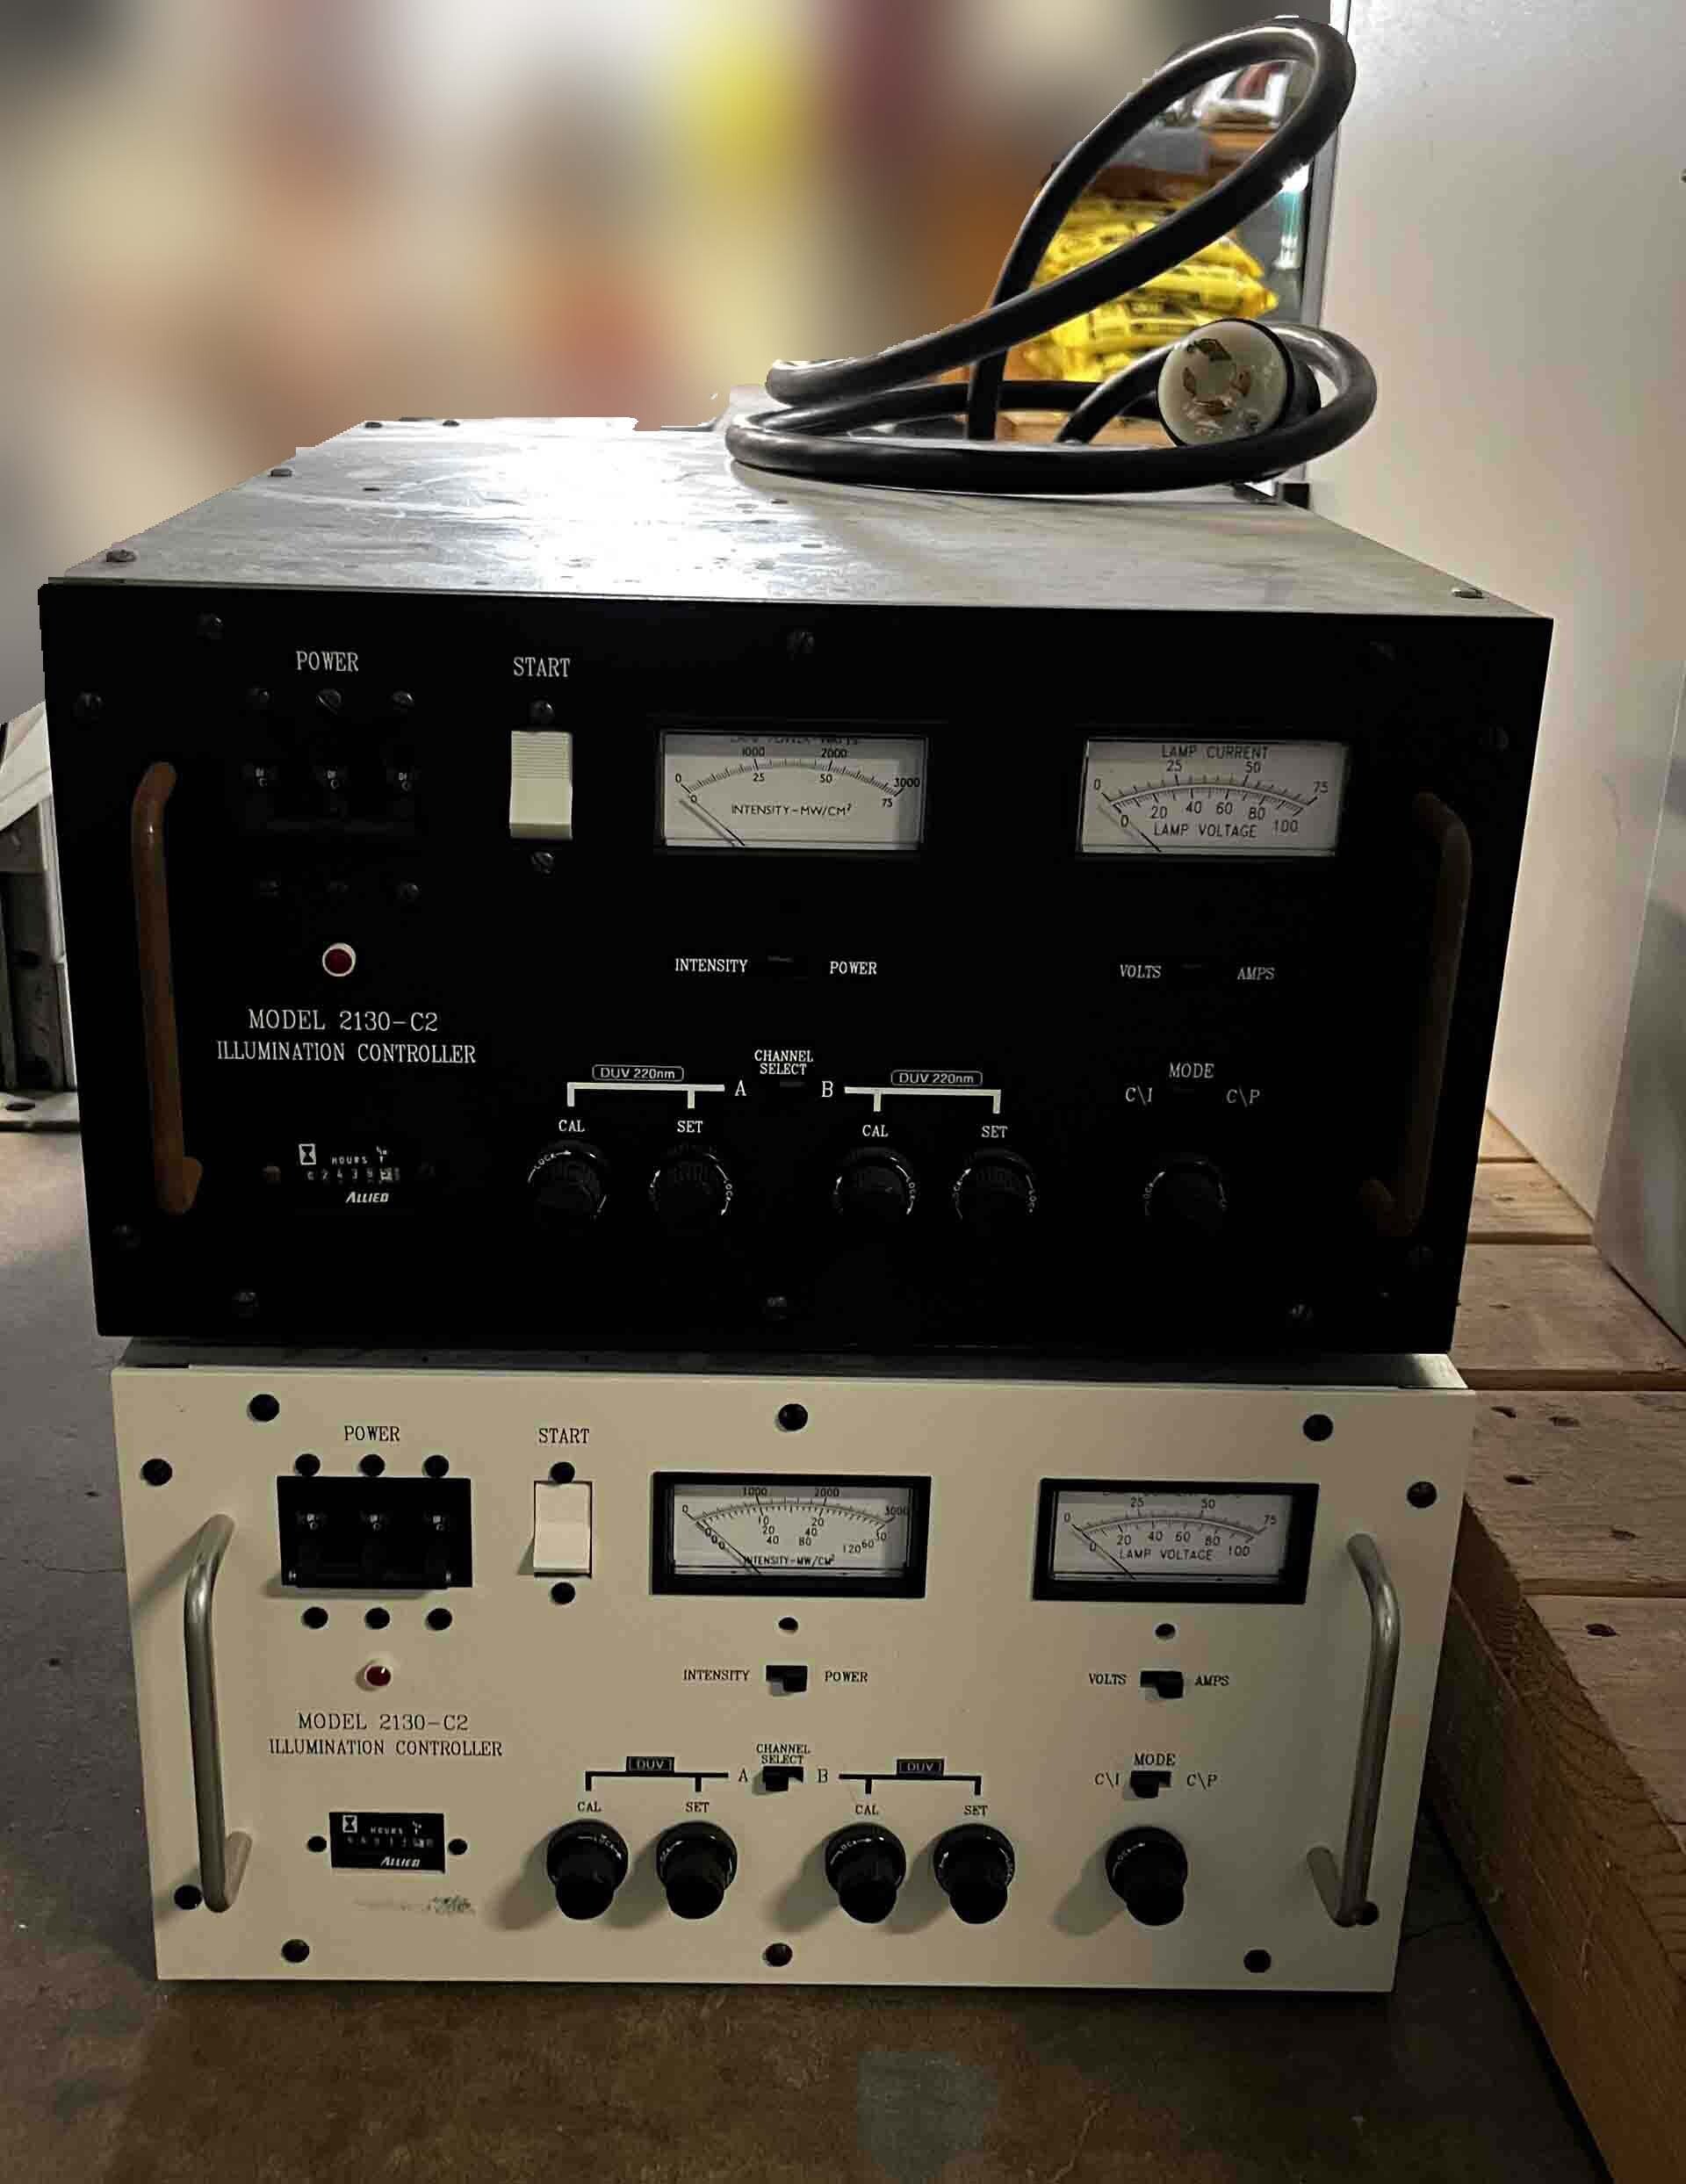 Foto Verwendet RADIATION POWER SYSTEMS 2130-C2 Zum Verkauf